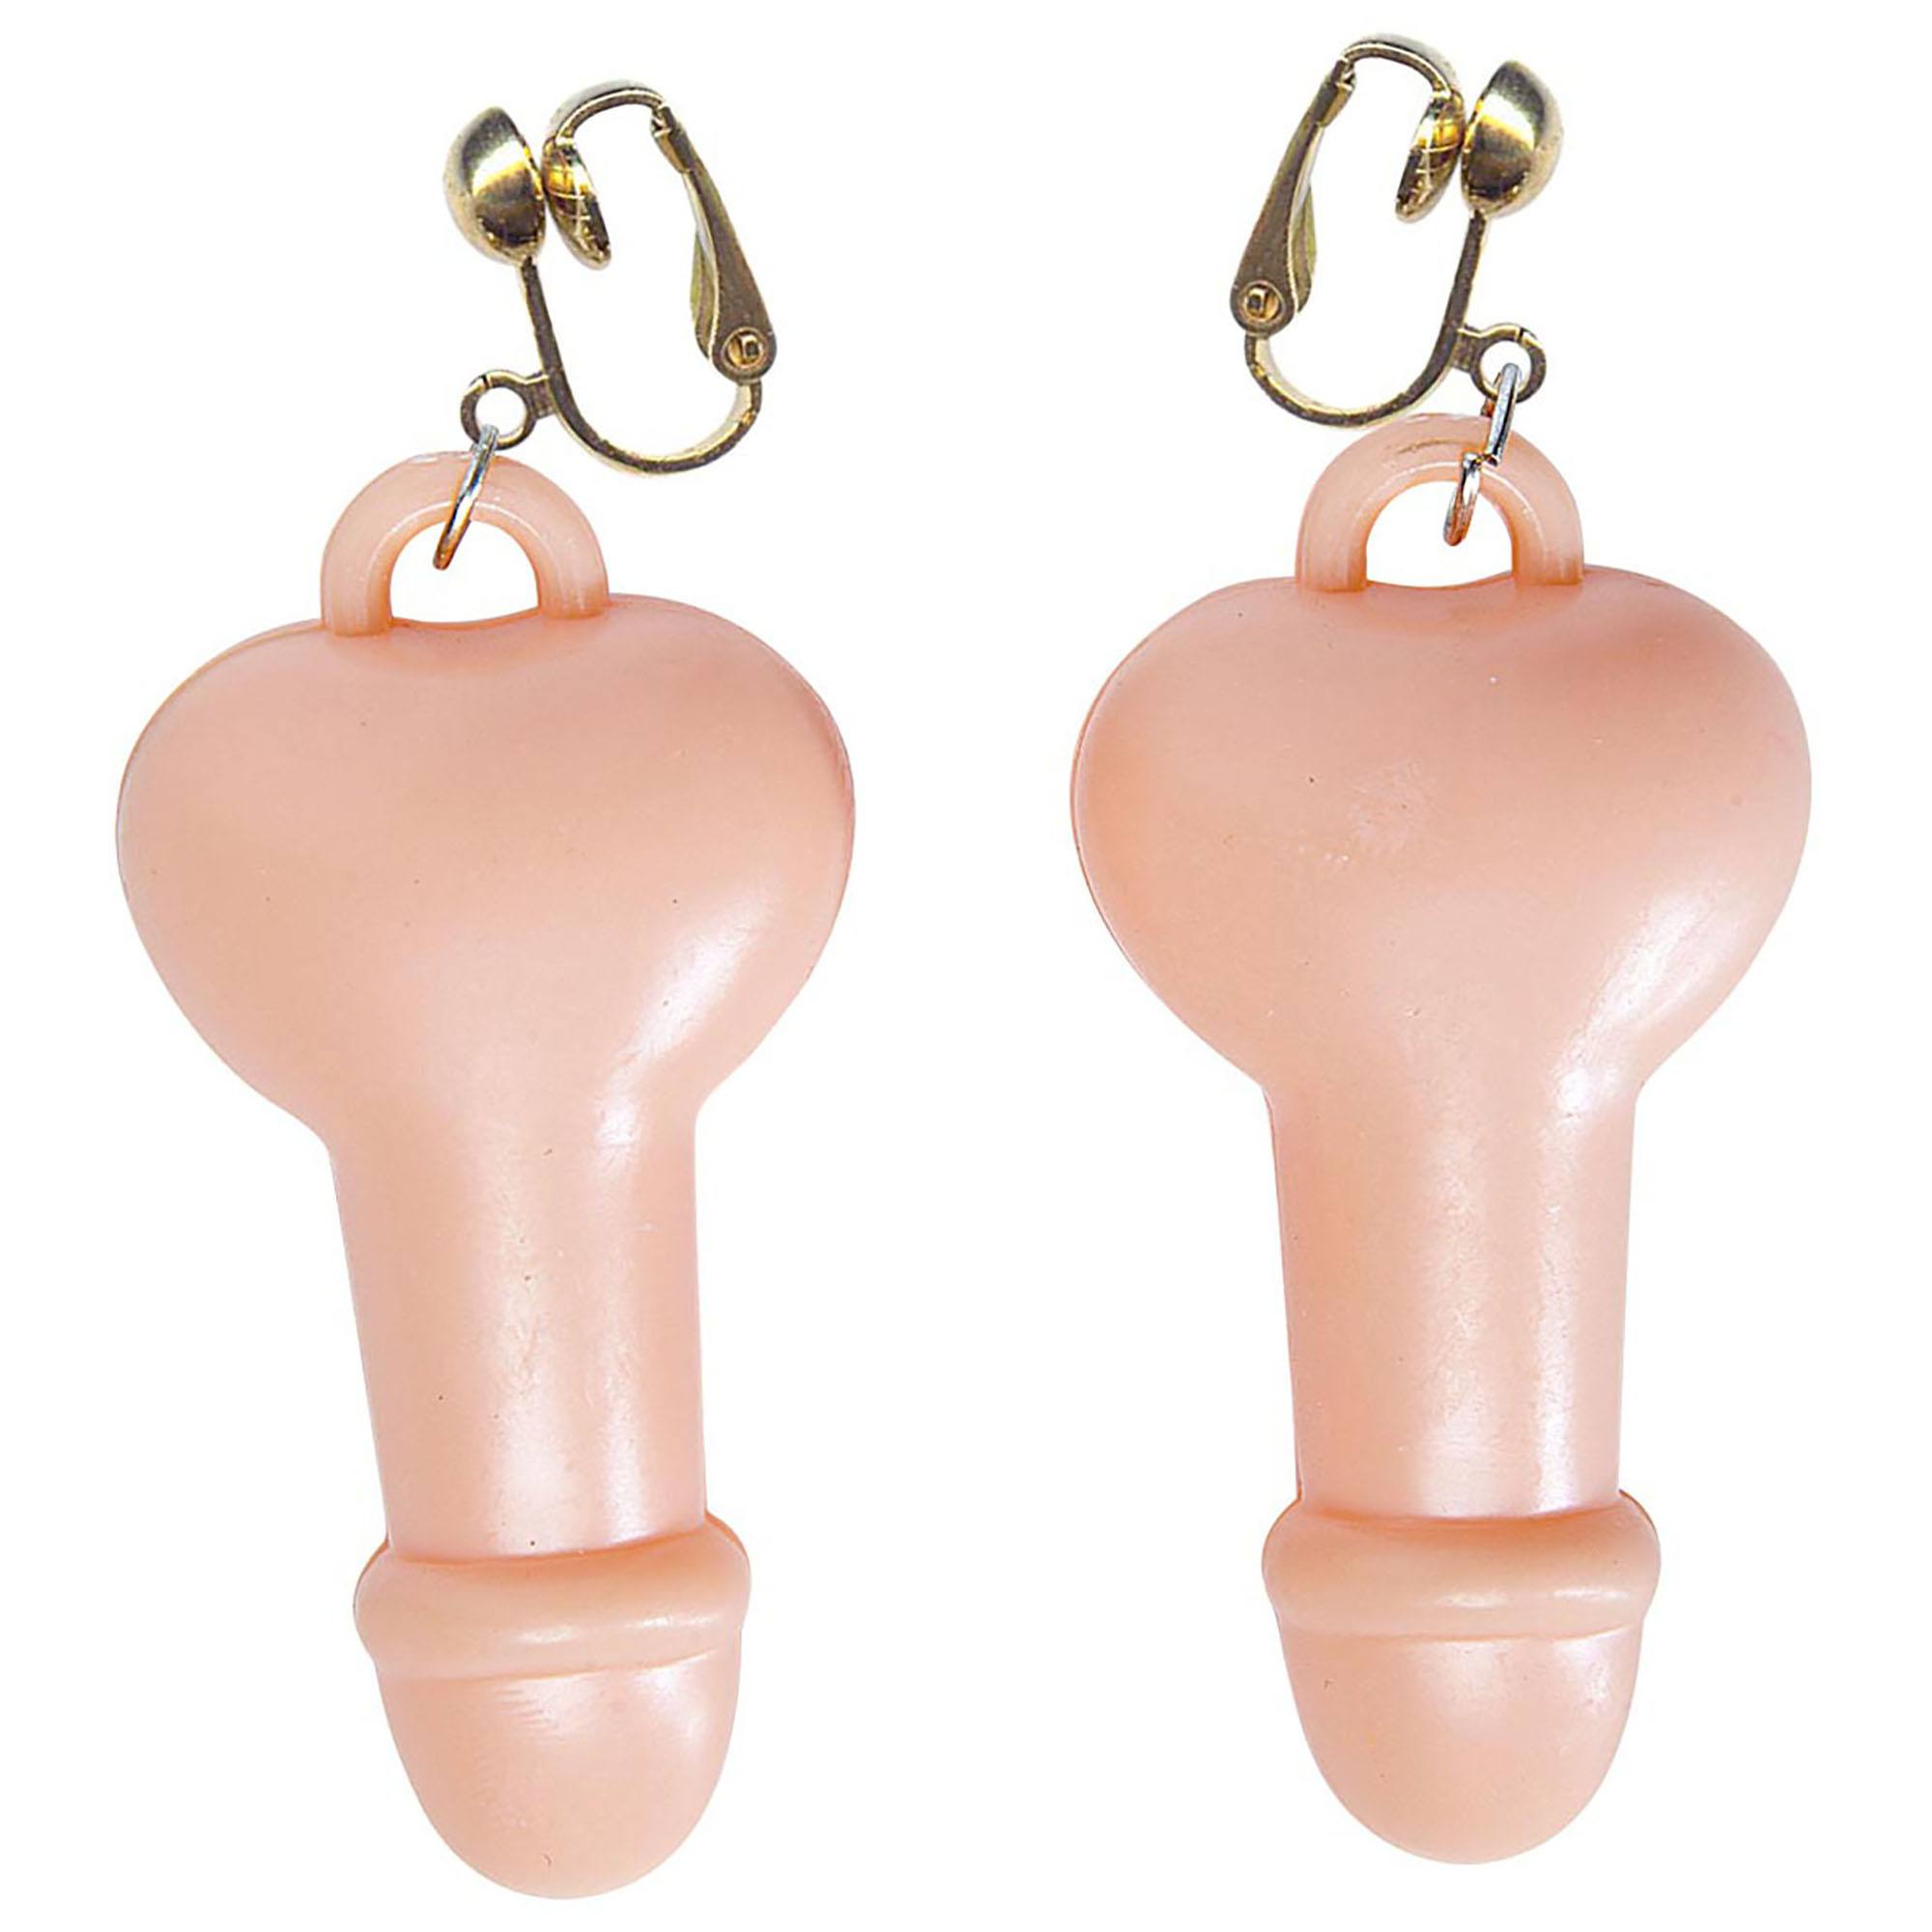 Erotische oorbellen in de vorm van een penis